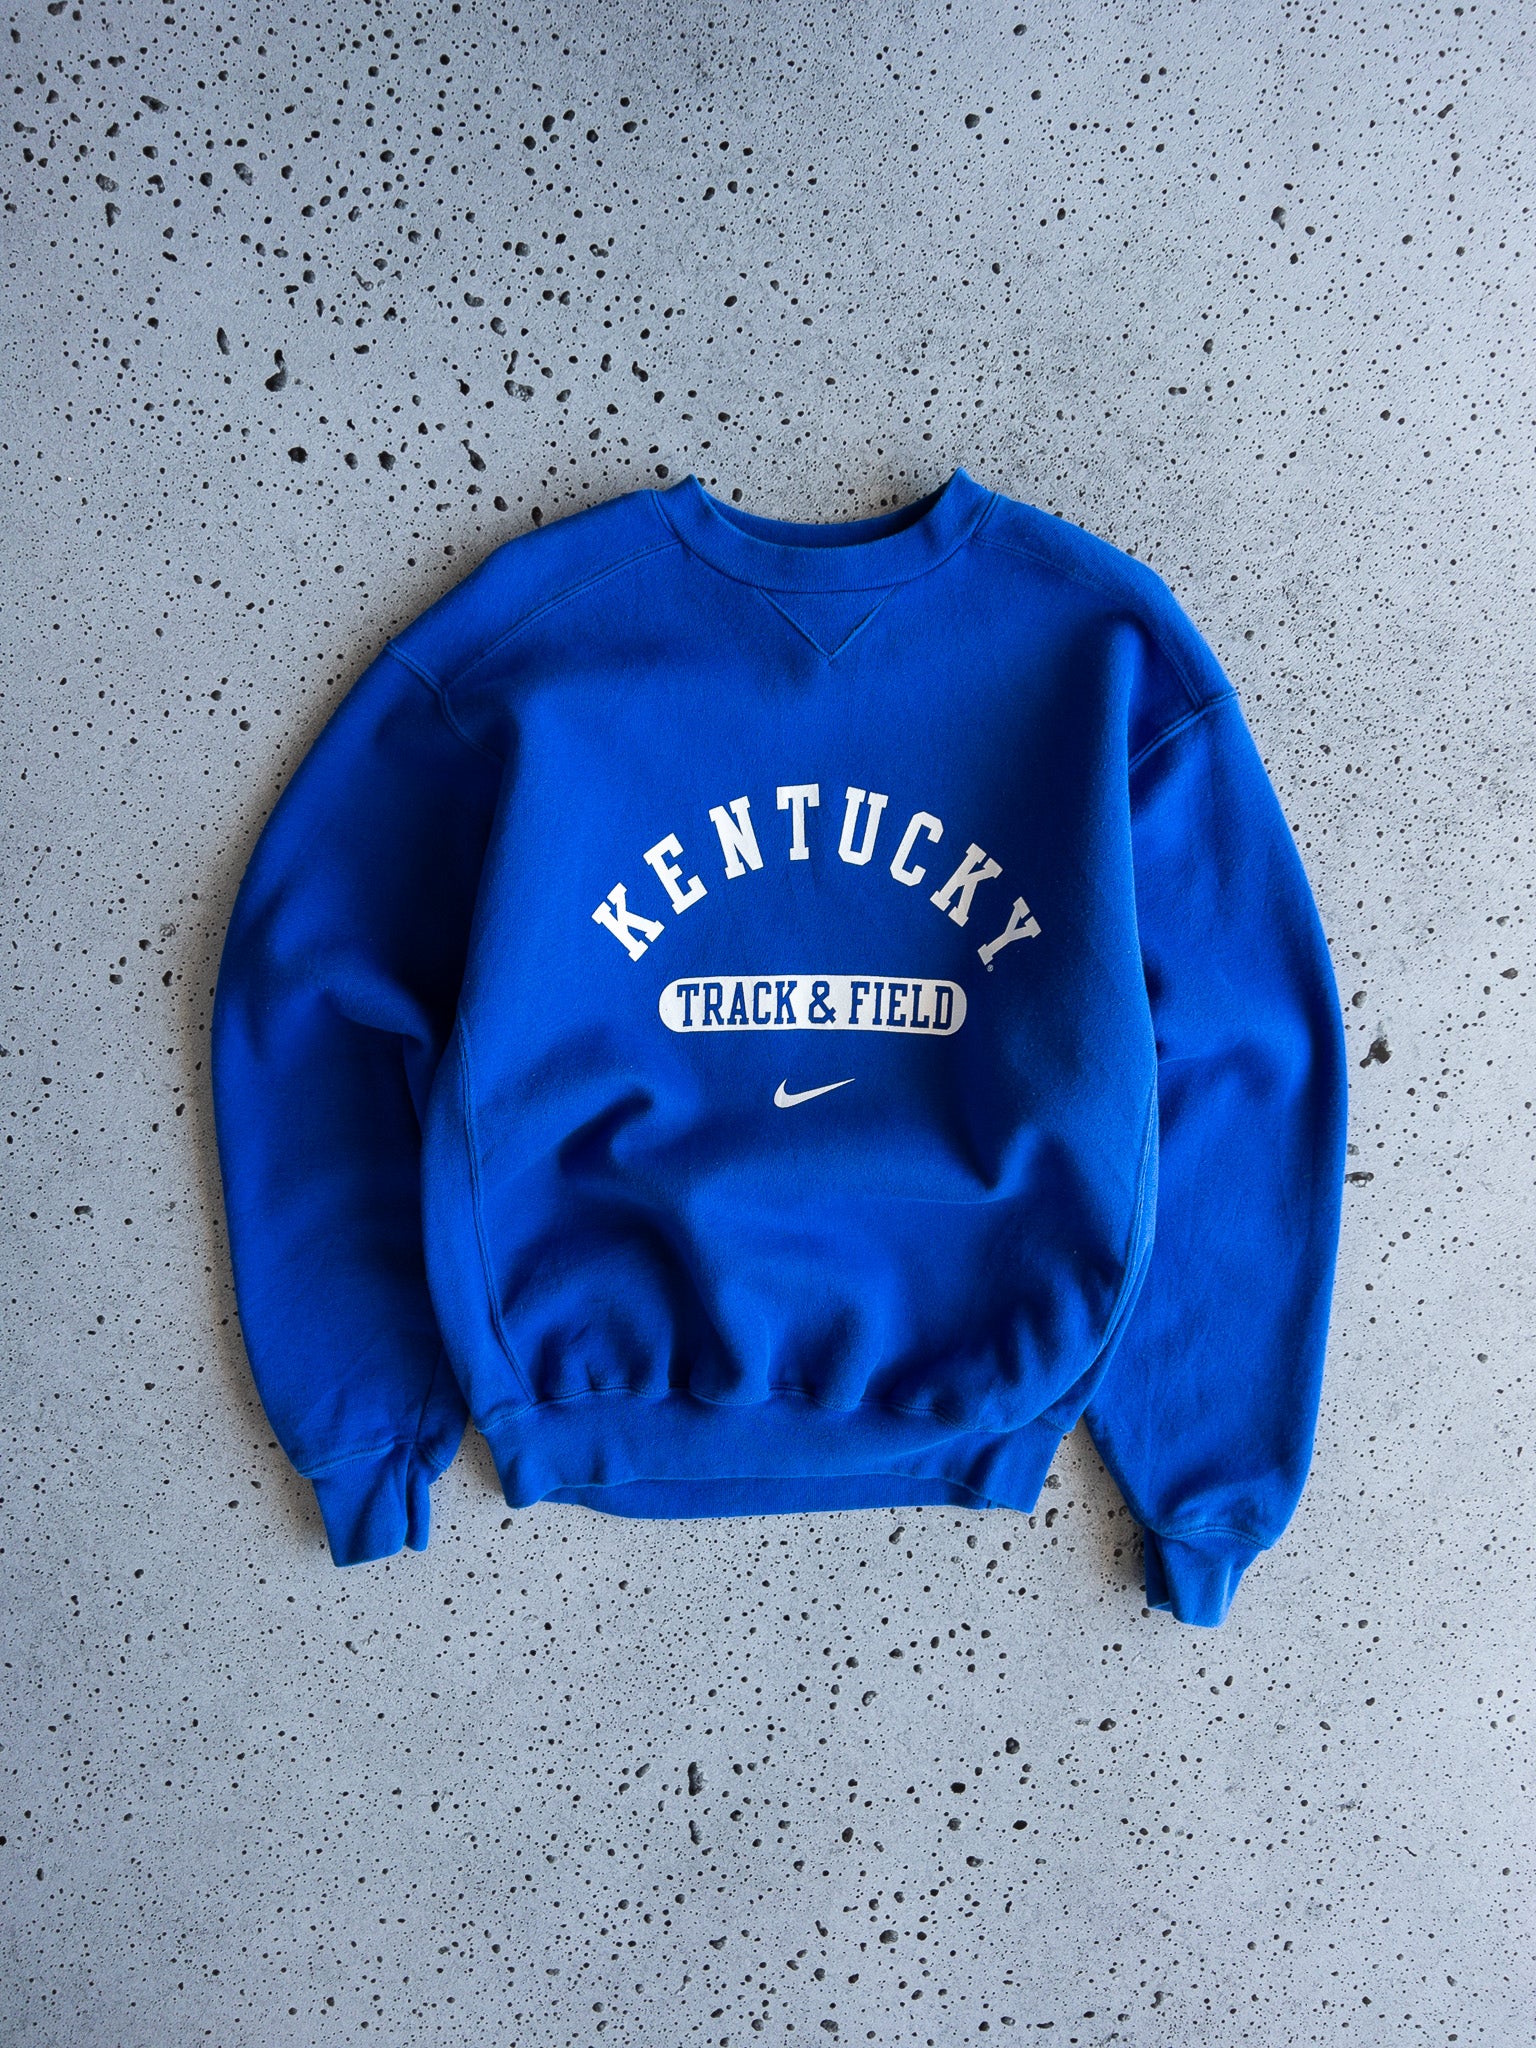 Vintage Kentucky Track & Field Nike Sweatshirt (S)